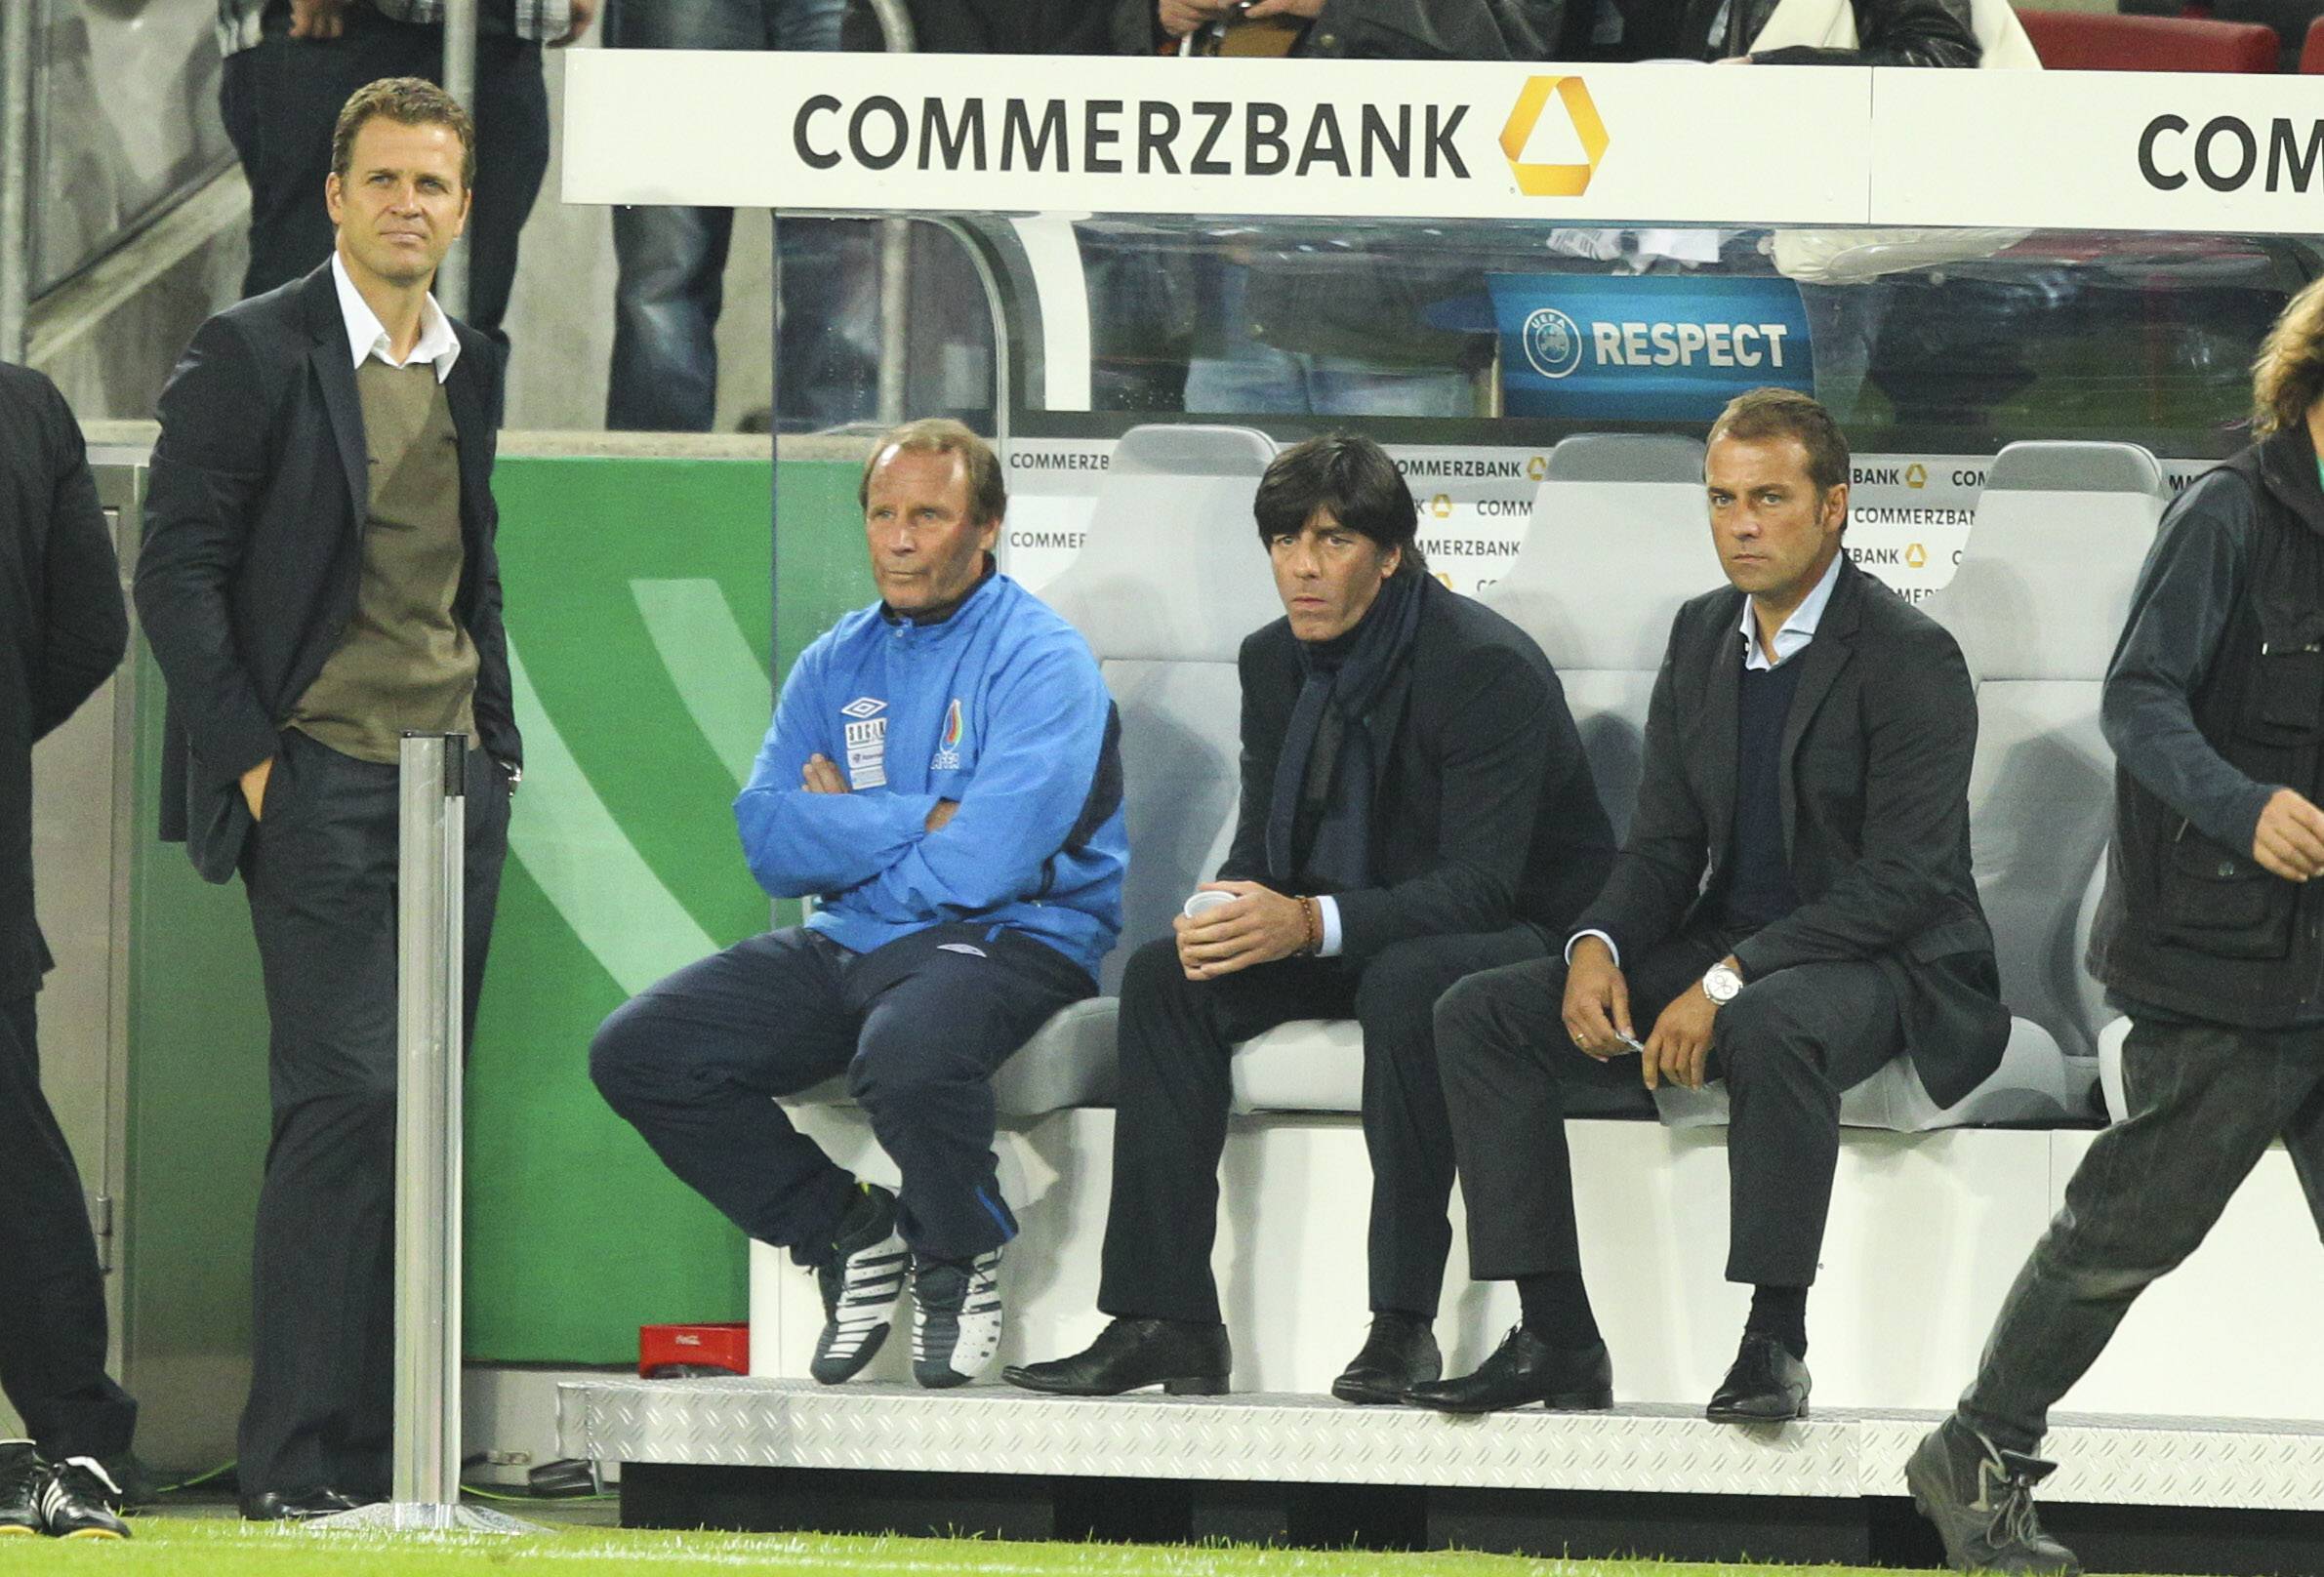 Berti Vogts als Nationaltrainer von Aserbaidschan sitzt auf der Bank neben Jogi Löw und Hansi Flick.